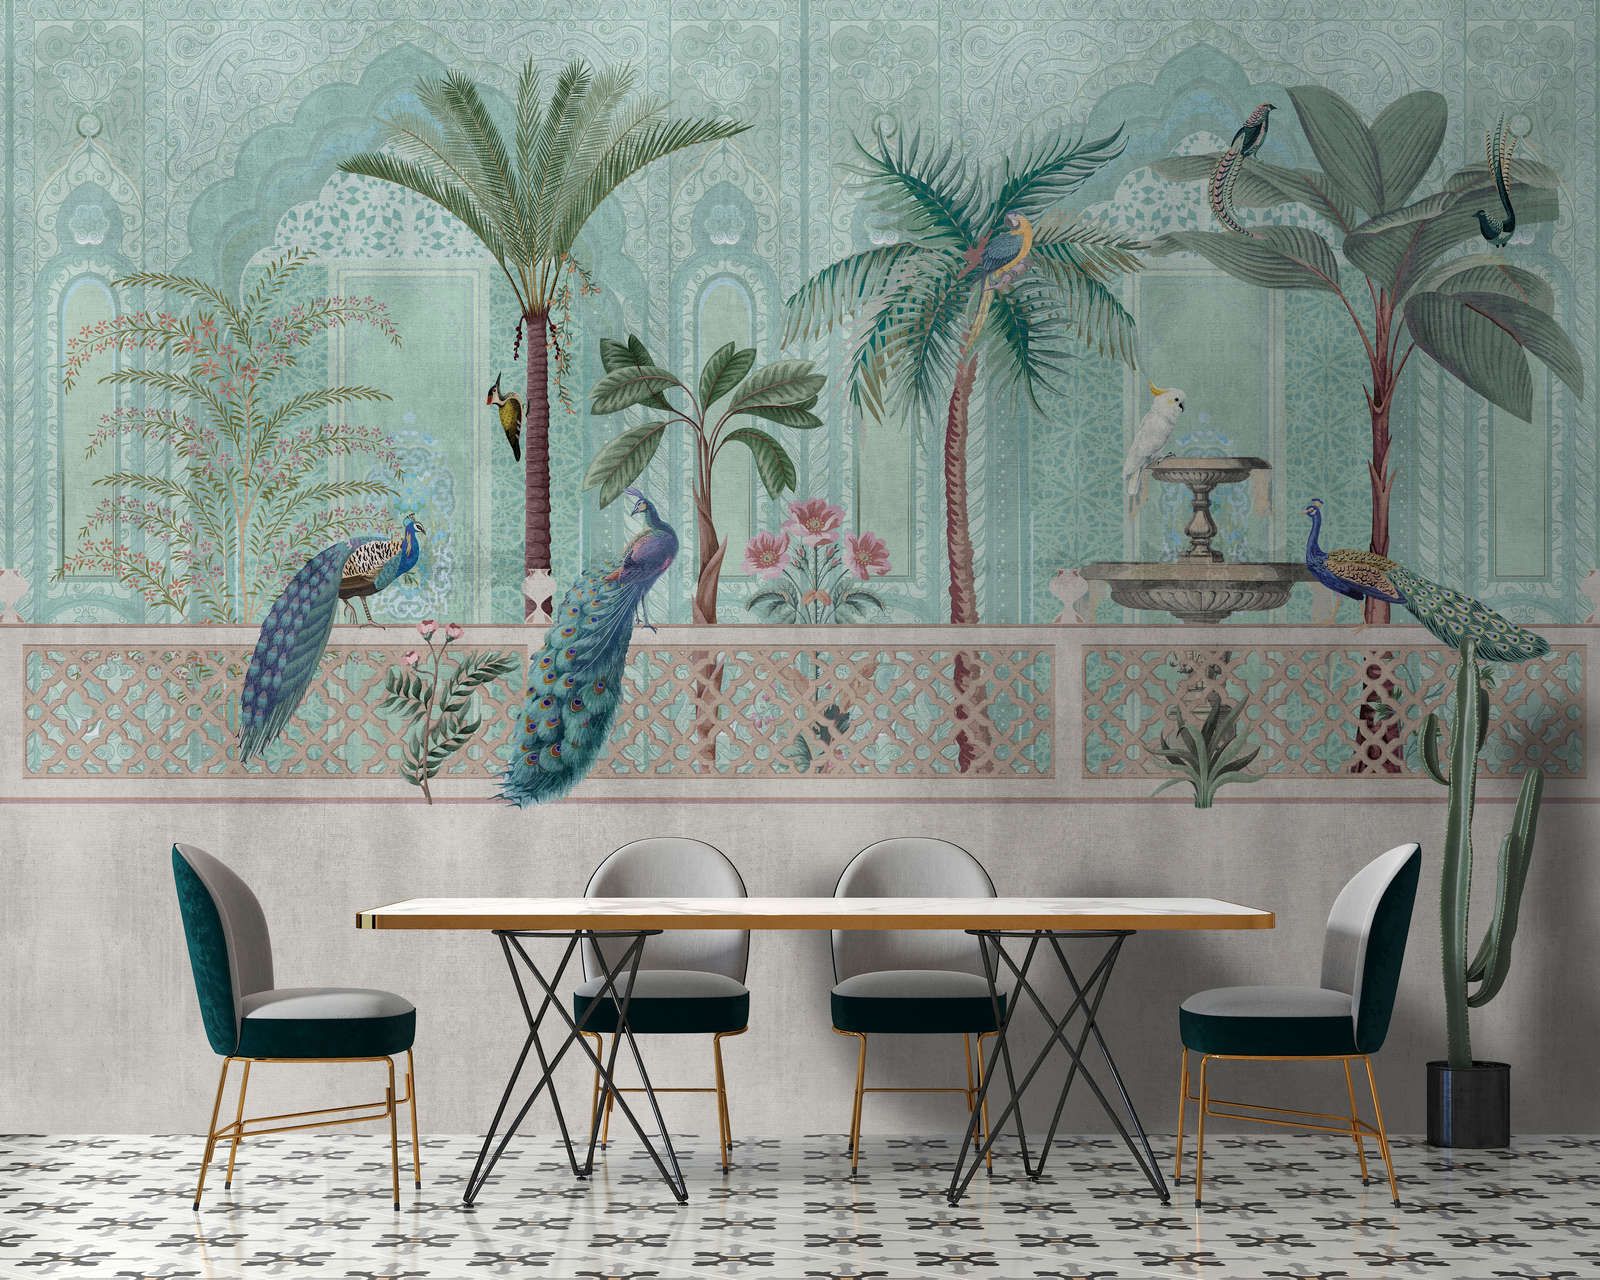             Digital behang »pavo« - Vogels, palmbomen & fonteinen - Groen, blauw met tapijtstructuur | mat, glad vlies
        